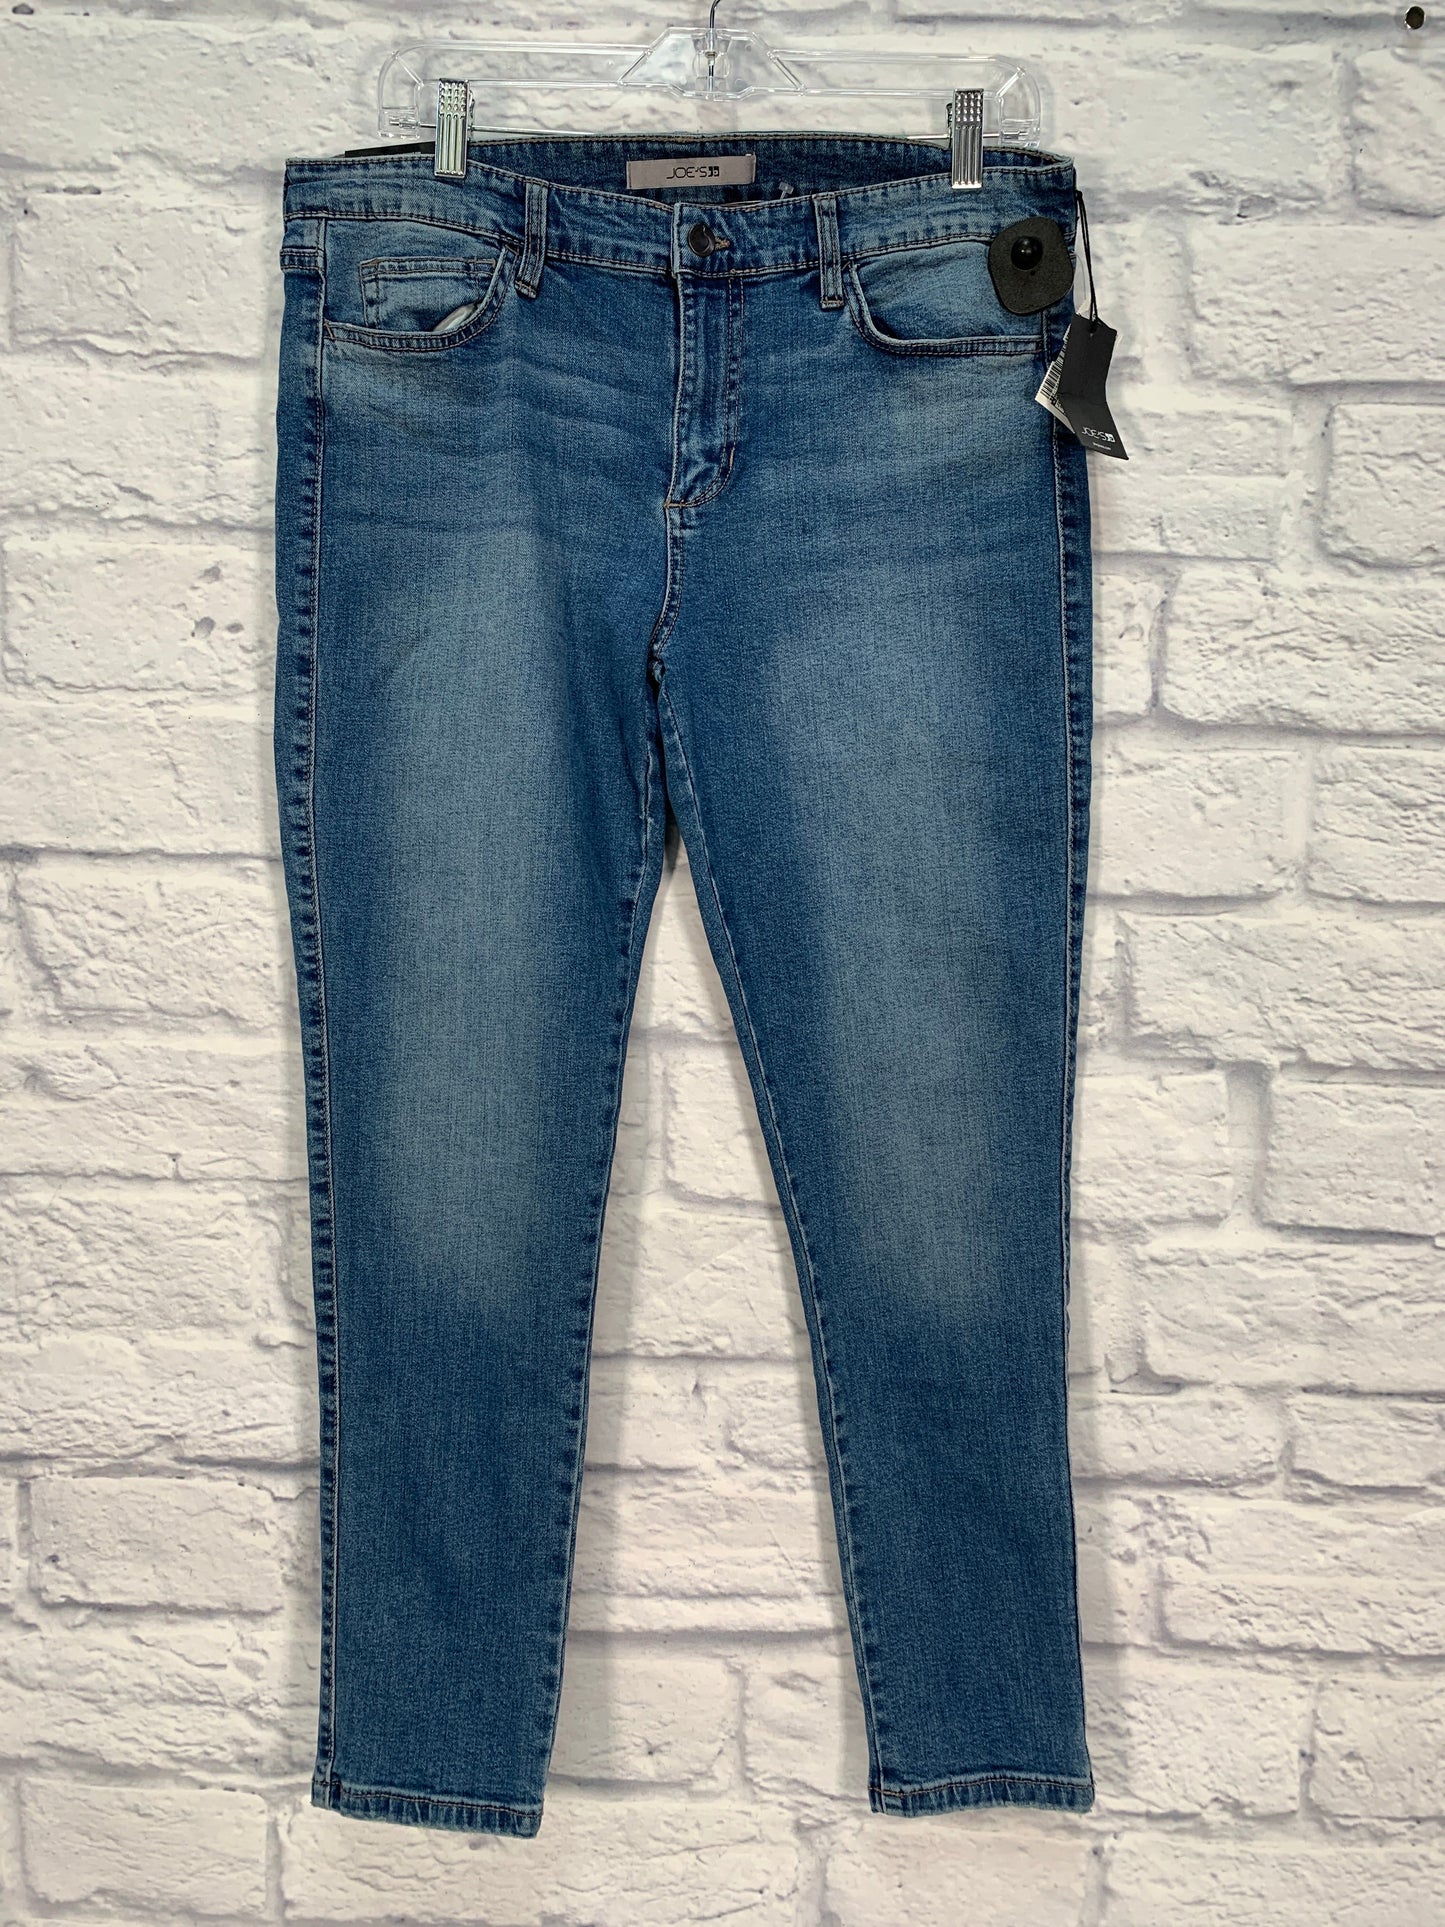 Blue Denim Jeans Designer Joes Jeans, Size 14